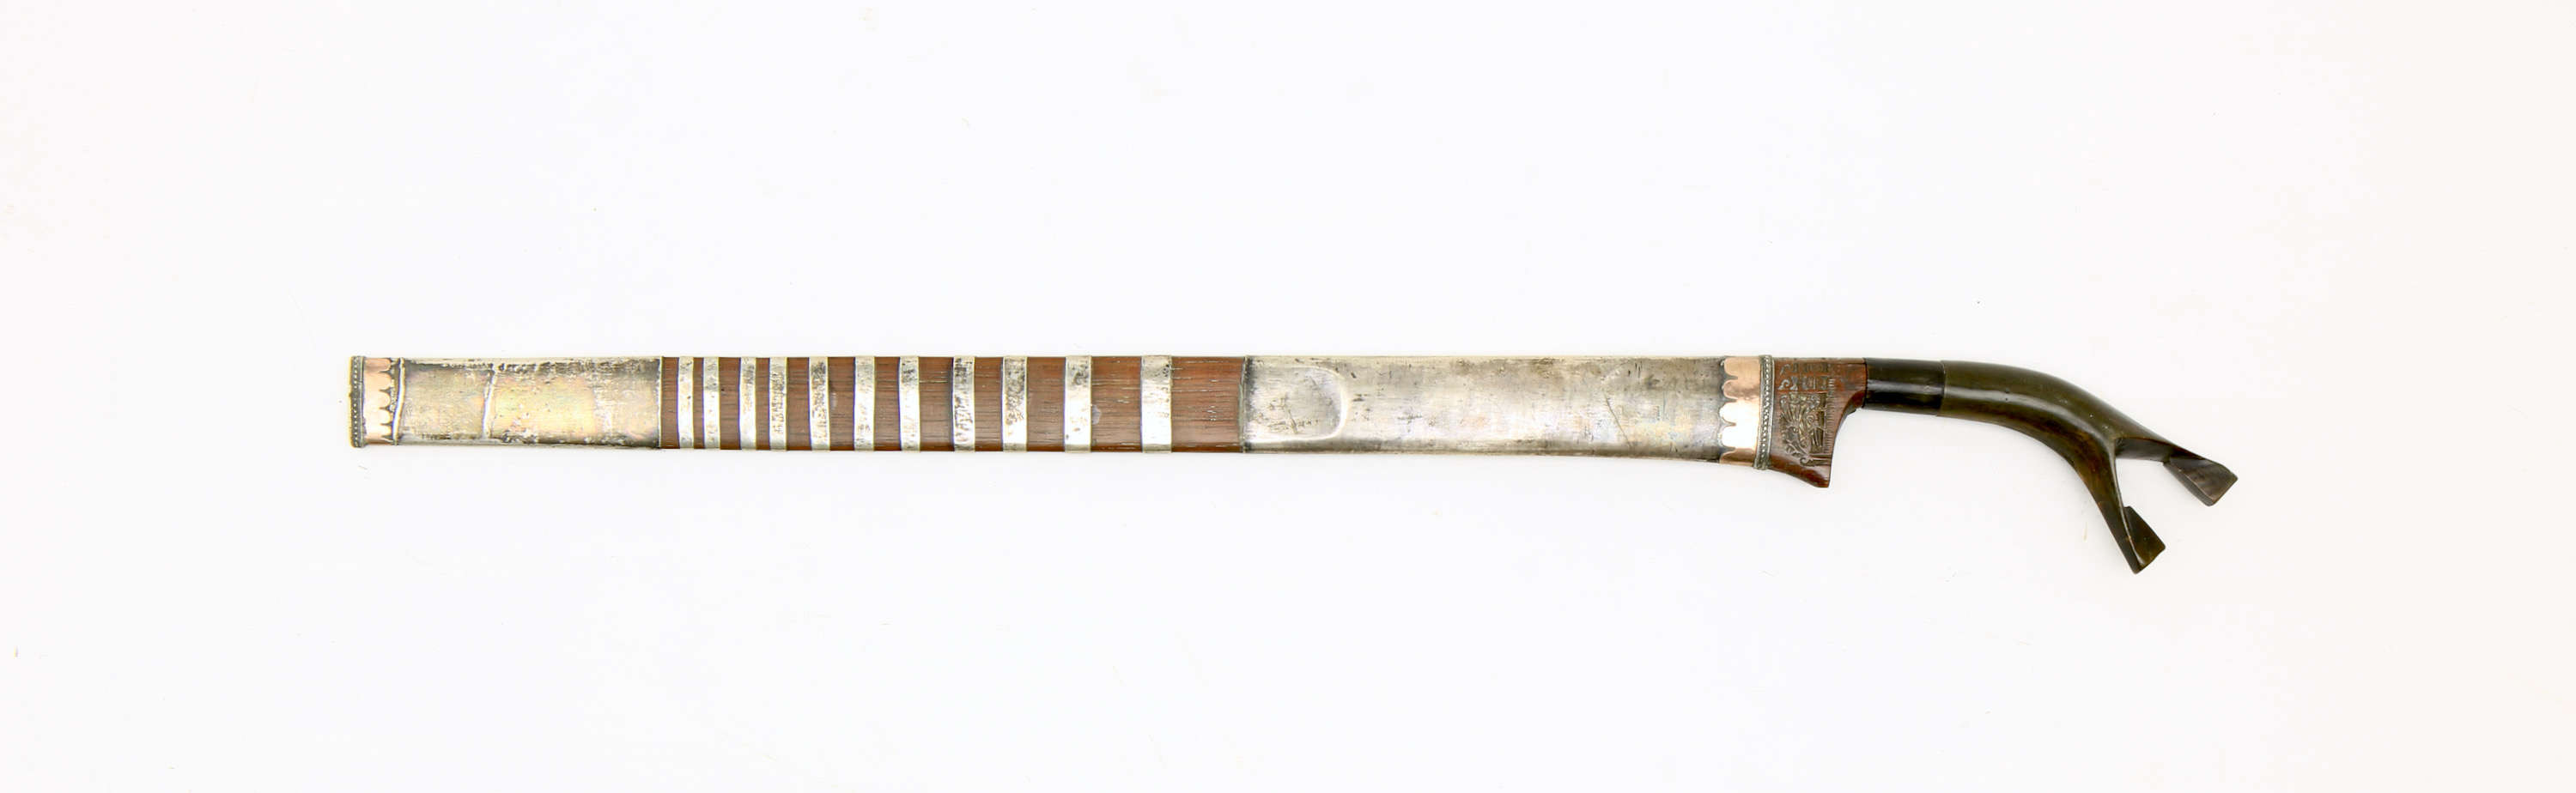 A Batak kalasan sword